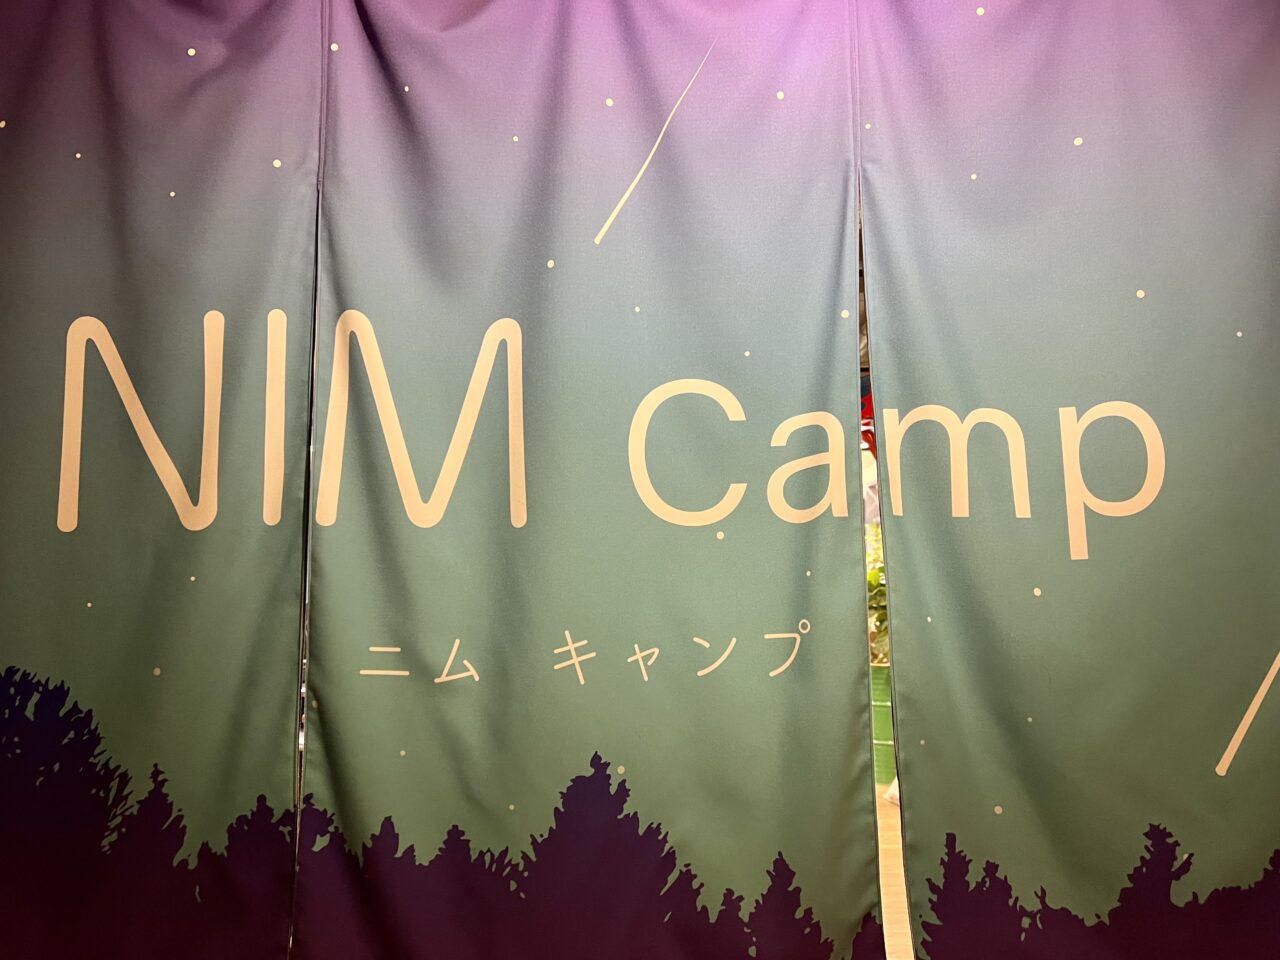 奈良いきものミュージアムの「NIMキャンプ」エリア